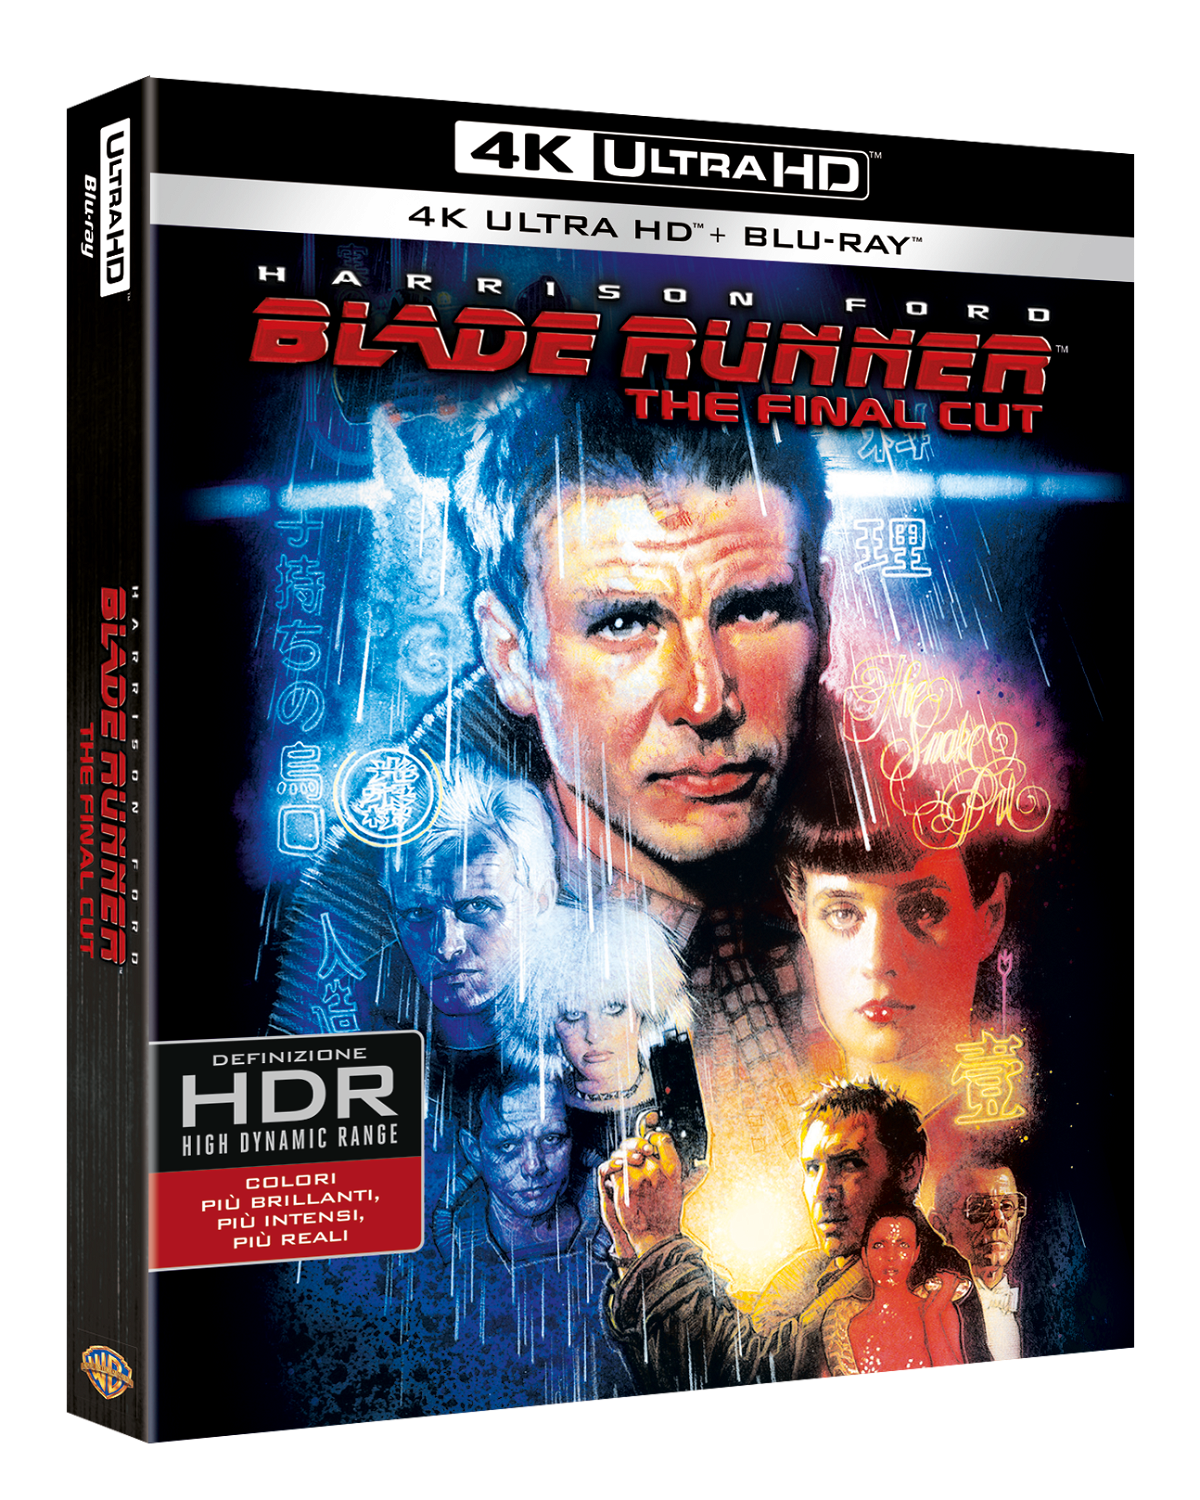 La cover dell'edizione italiana di Blade Runner: The Final Cut 4k UHD